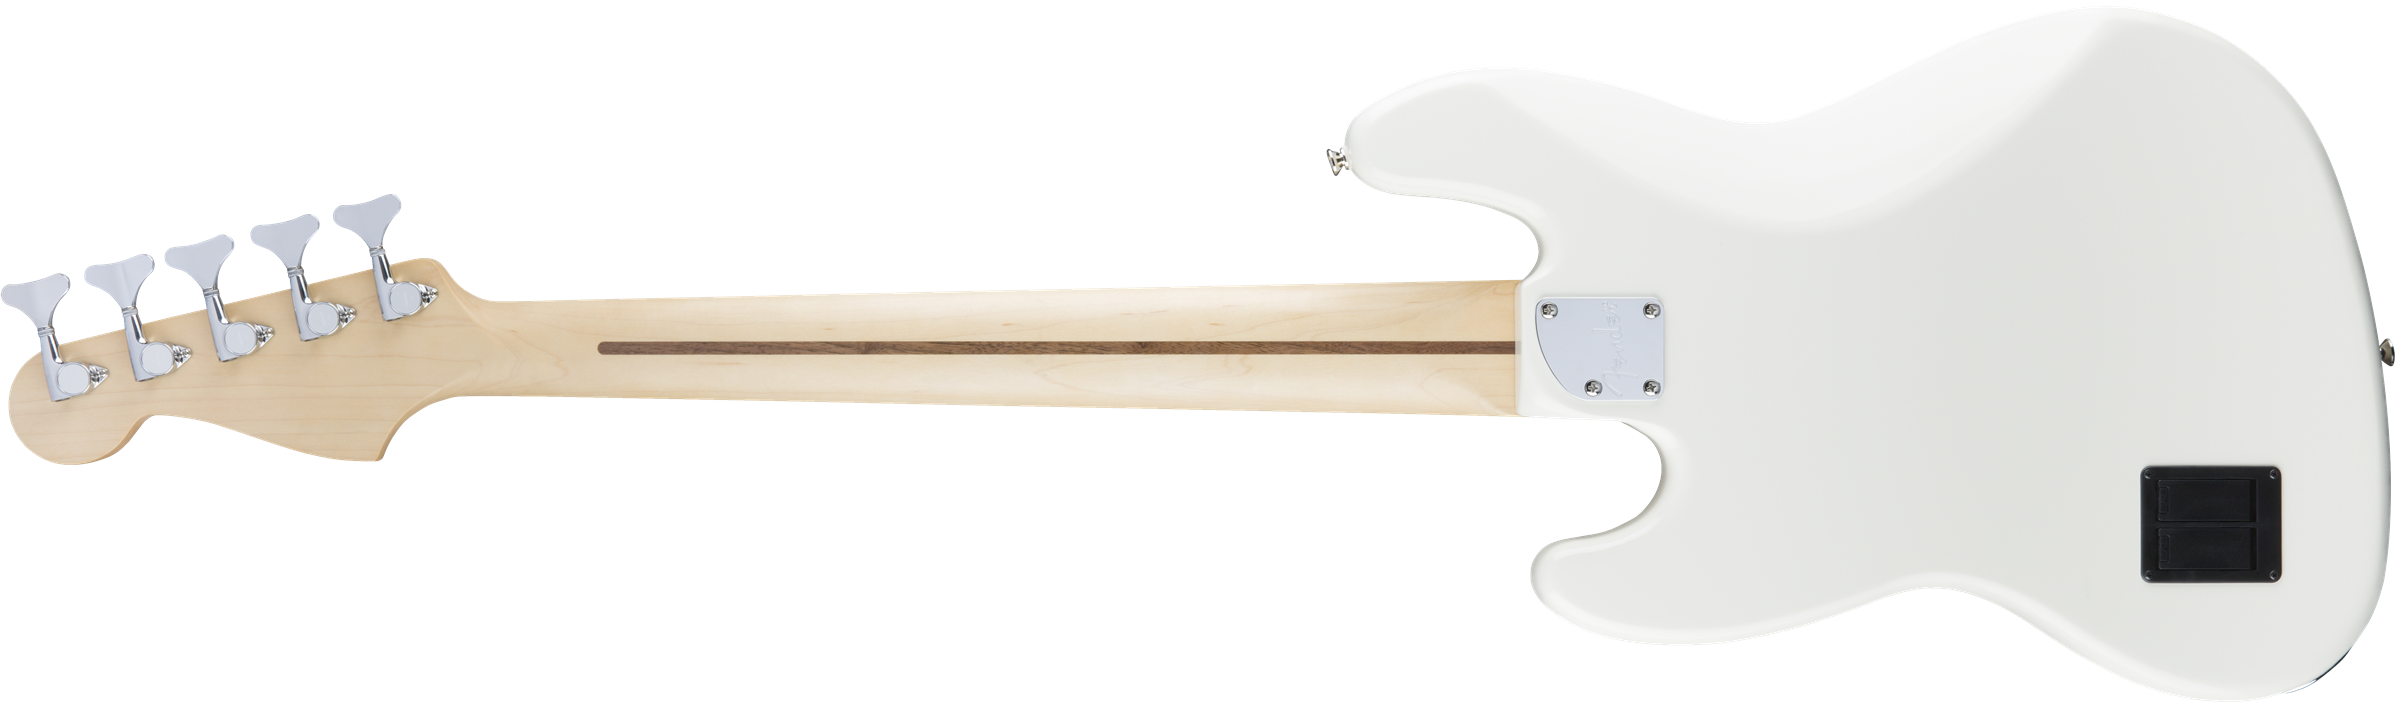 Fender Jazz Bass Deluxe Active Pf - Olympic White - Bajo eléctrico de cuerpo sólido - Variation 1